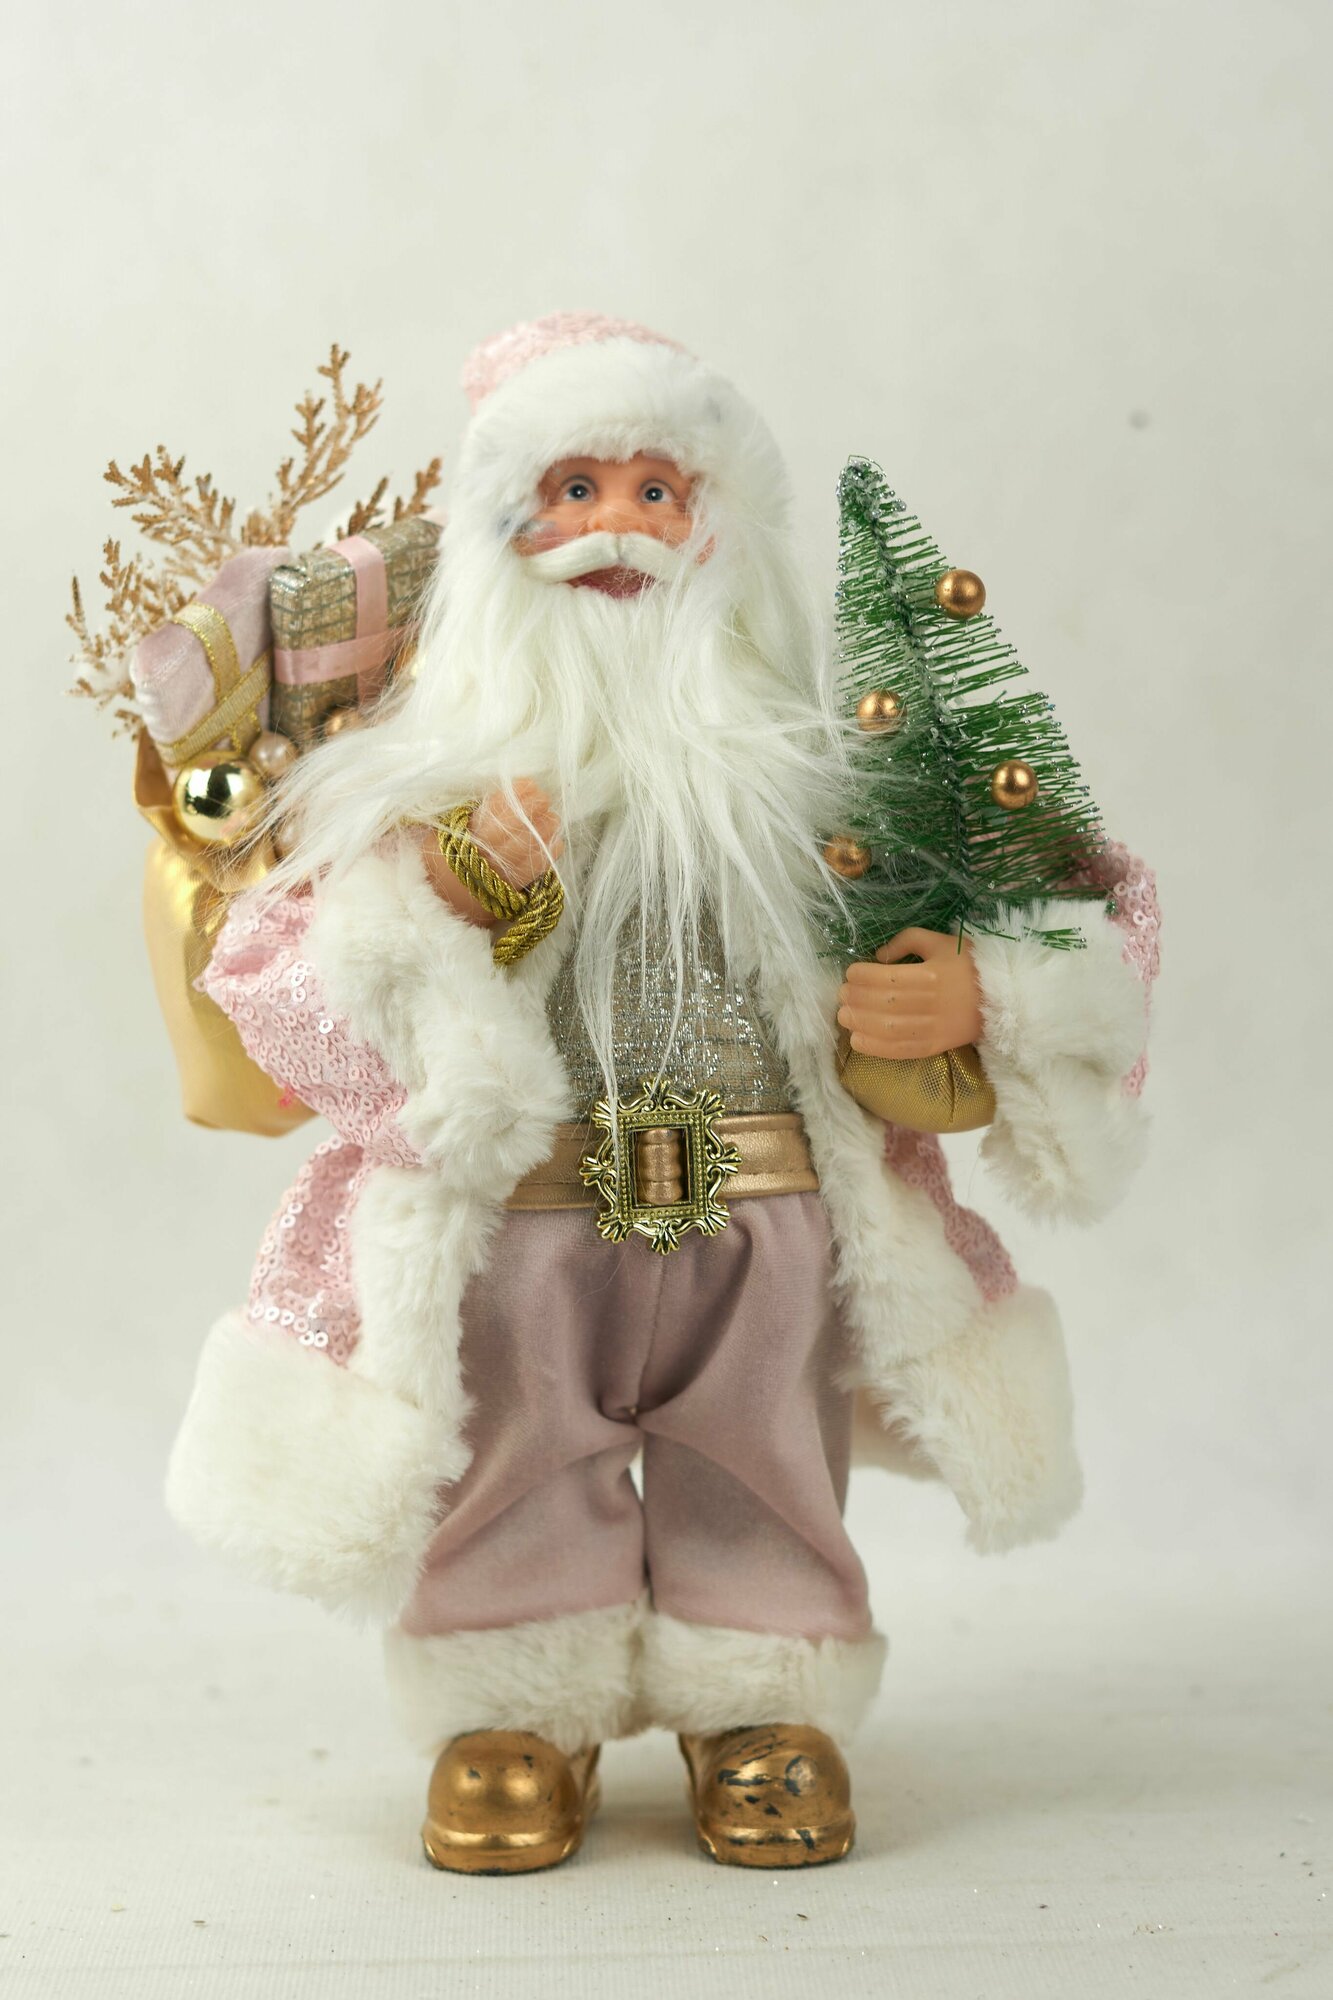 Фигурка декоративная Дед Мороз Зимний чародей цвет. розовый 30 см,